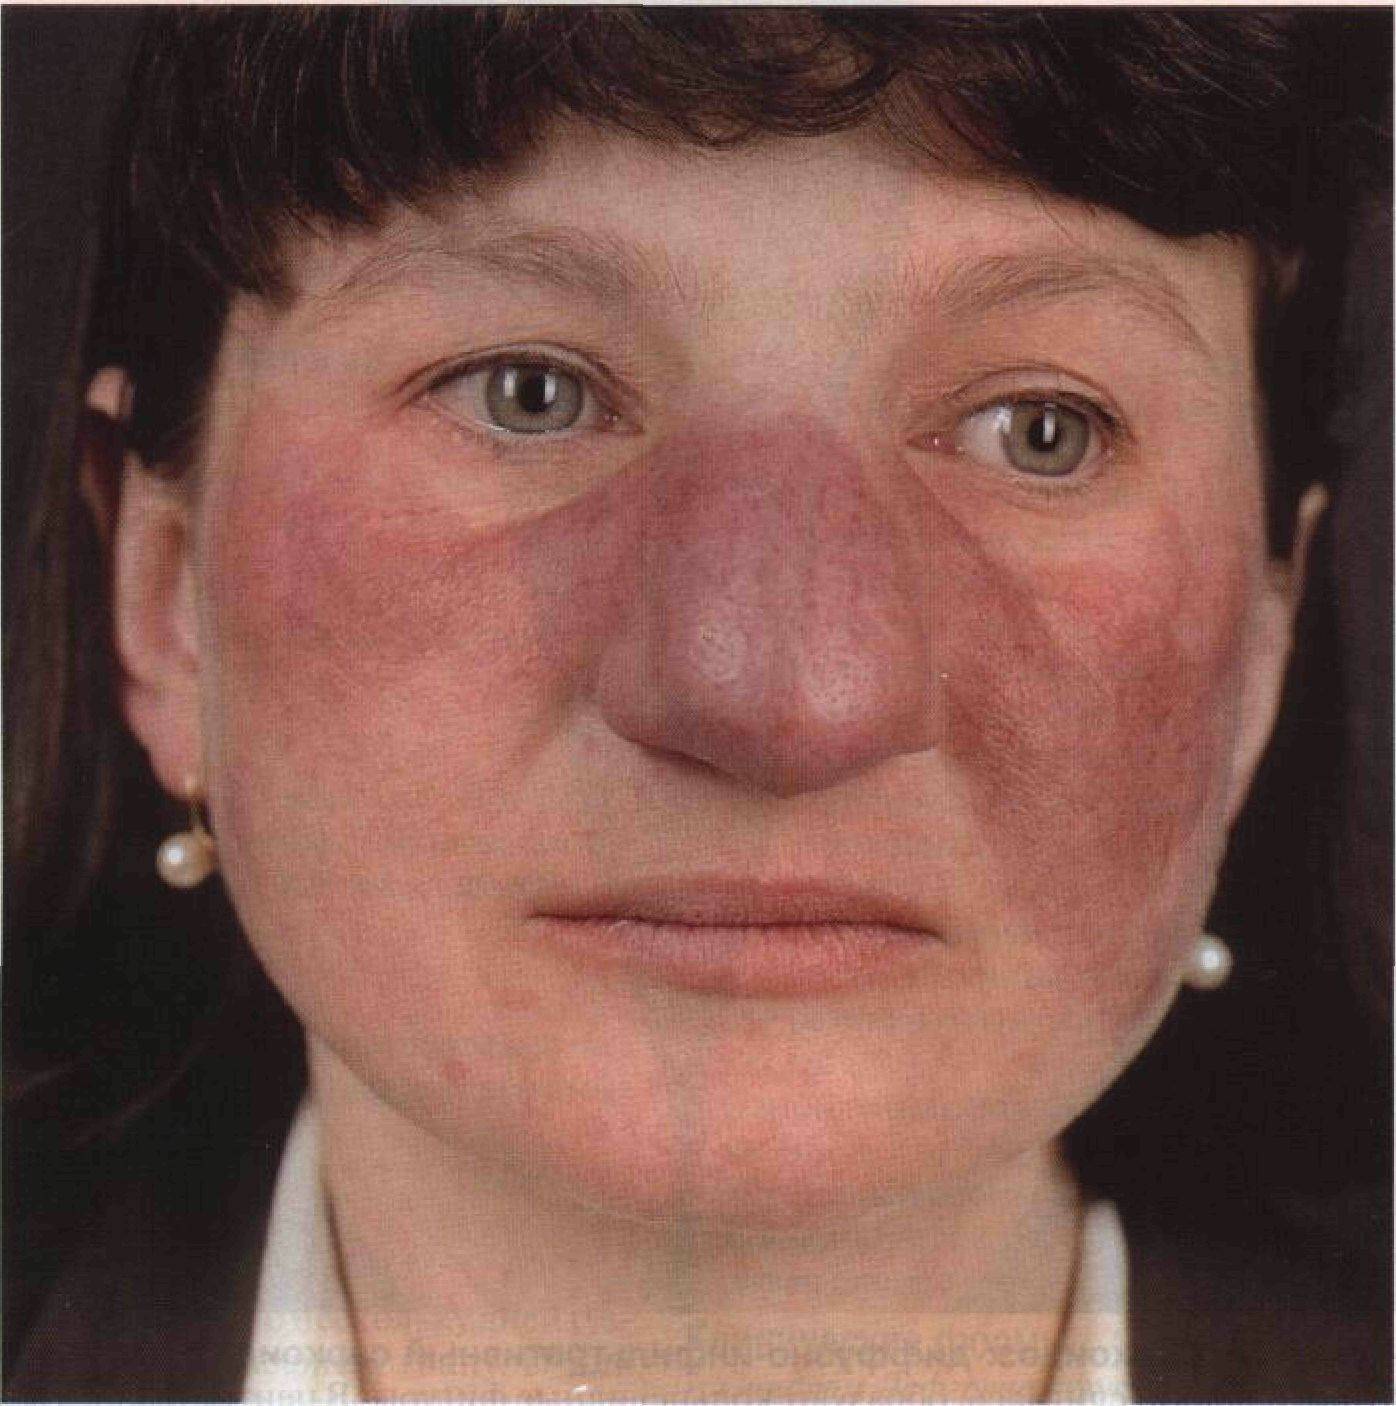 Аутоиммунные заболевания кожи фото